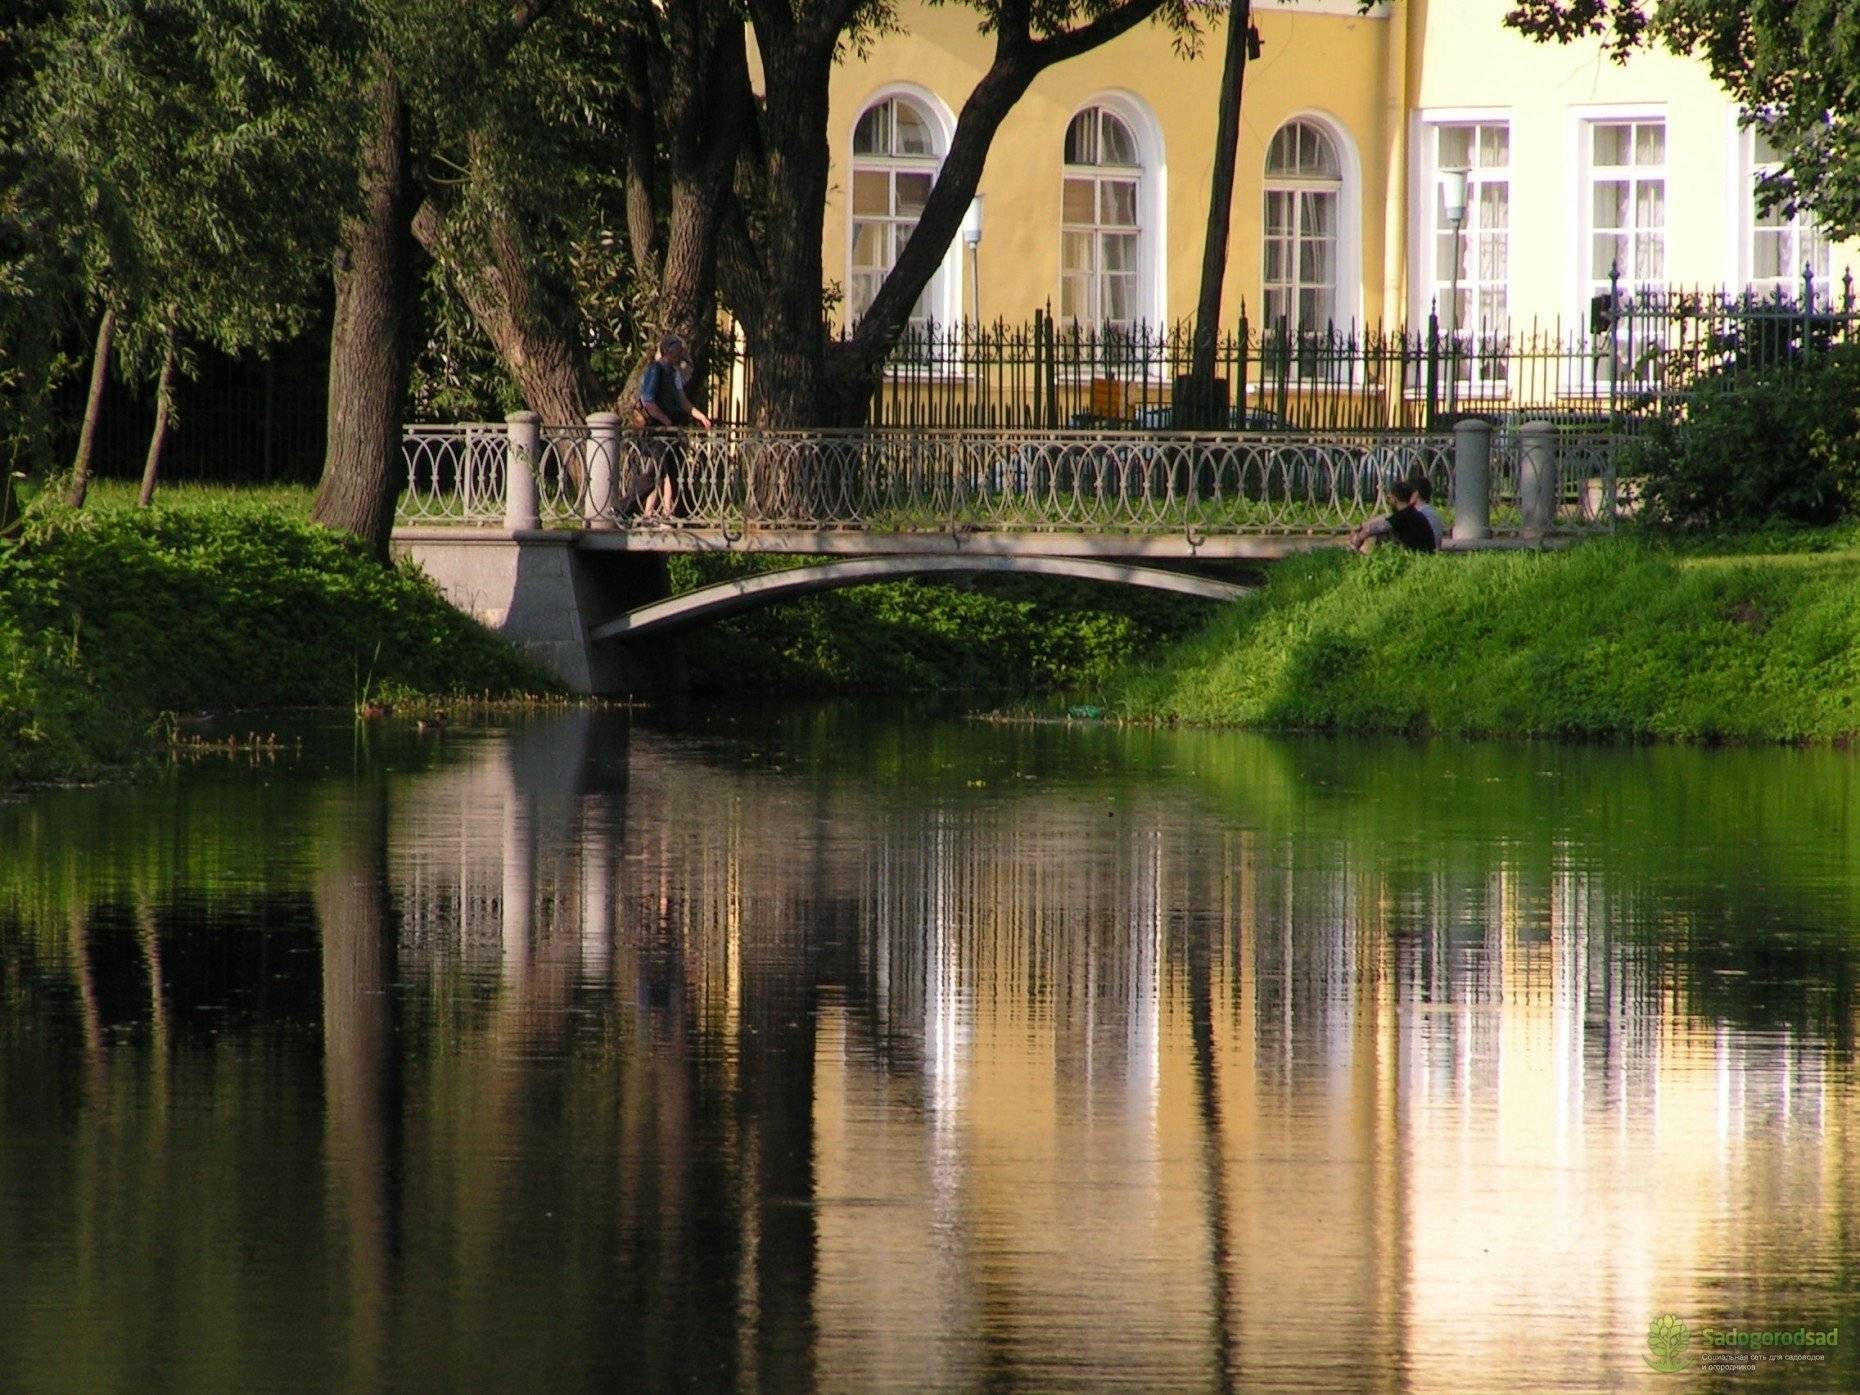 Резиденция князя потемкина в санкт-петербурге, таврический дворец и сад, история, режим работы и цены